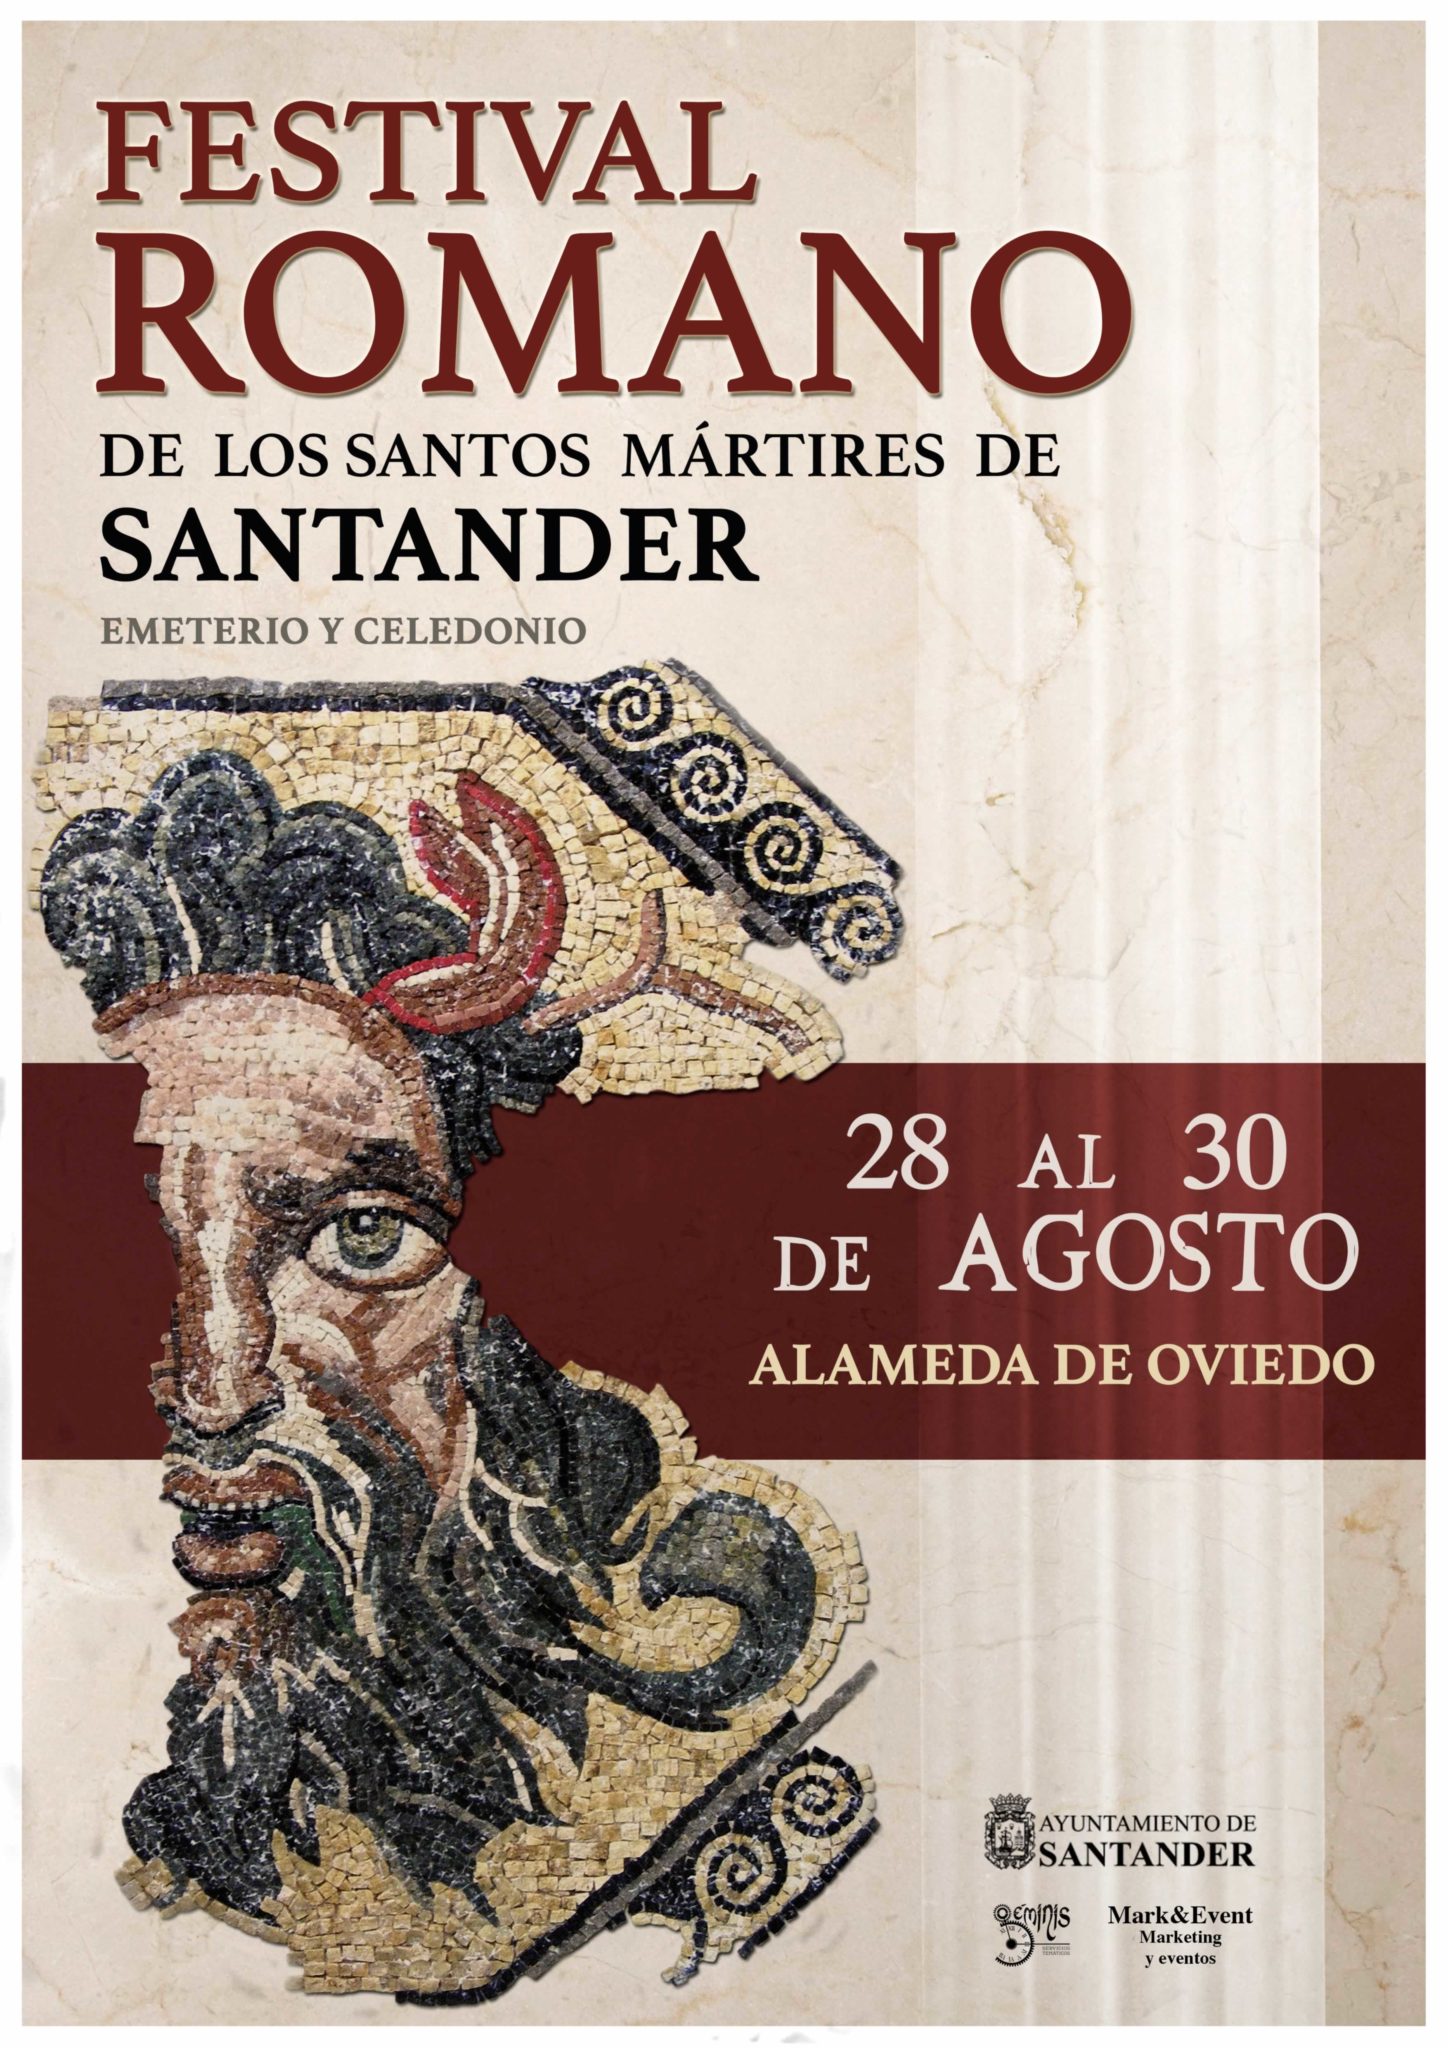 Programacion completa del Festival Romano de los santos mártires en Santander del 28 al 30 de Agosto del 2015